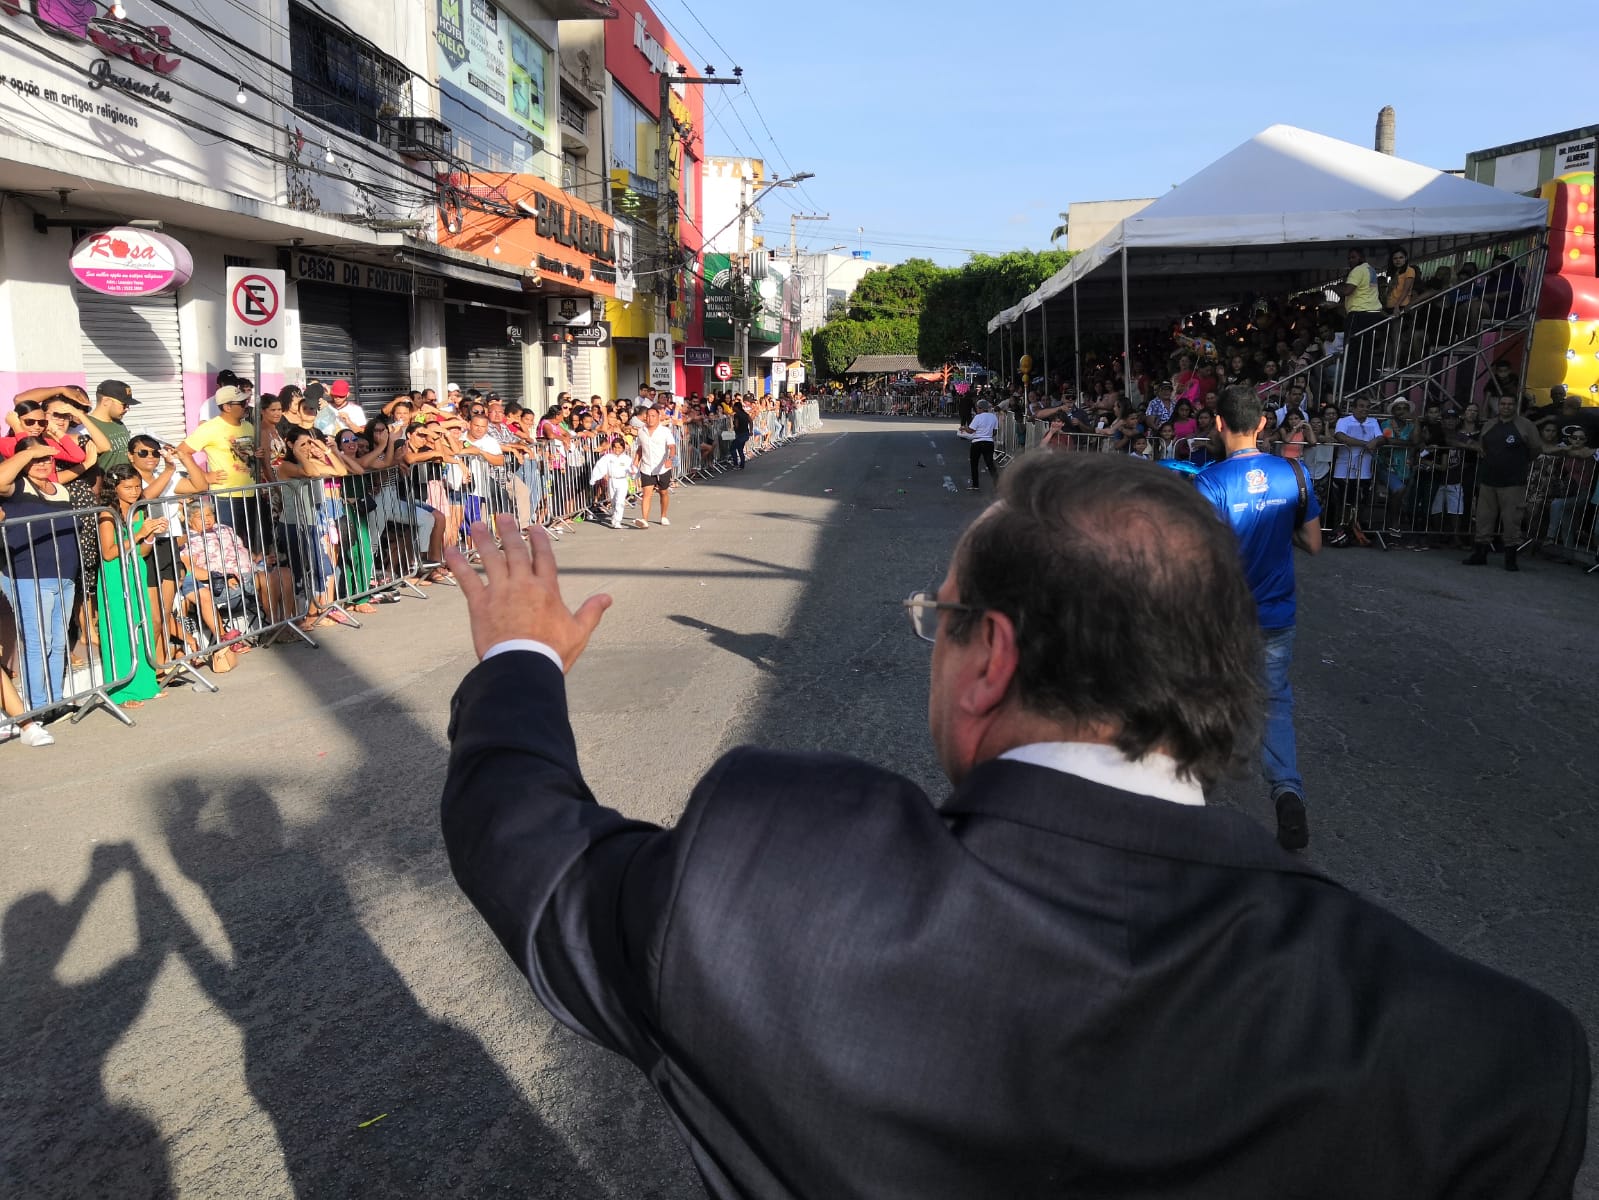 Arapiraca Comemora Com Um Grande Desfile Os Seus Anos De Emancipa O Politica Di Rio